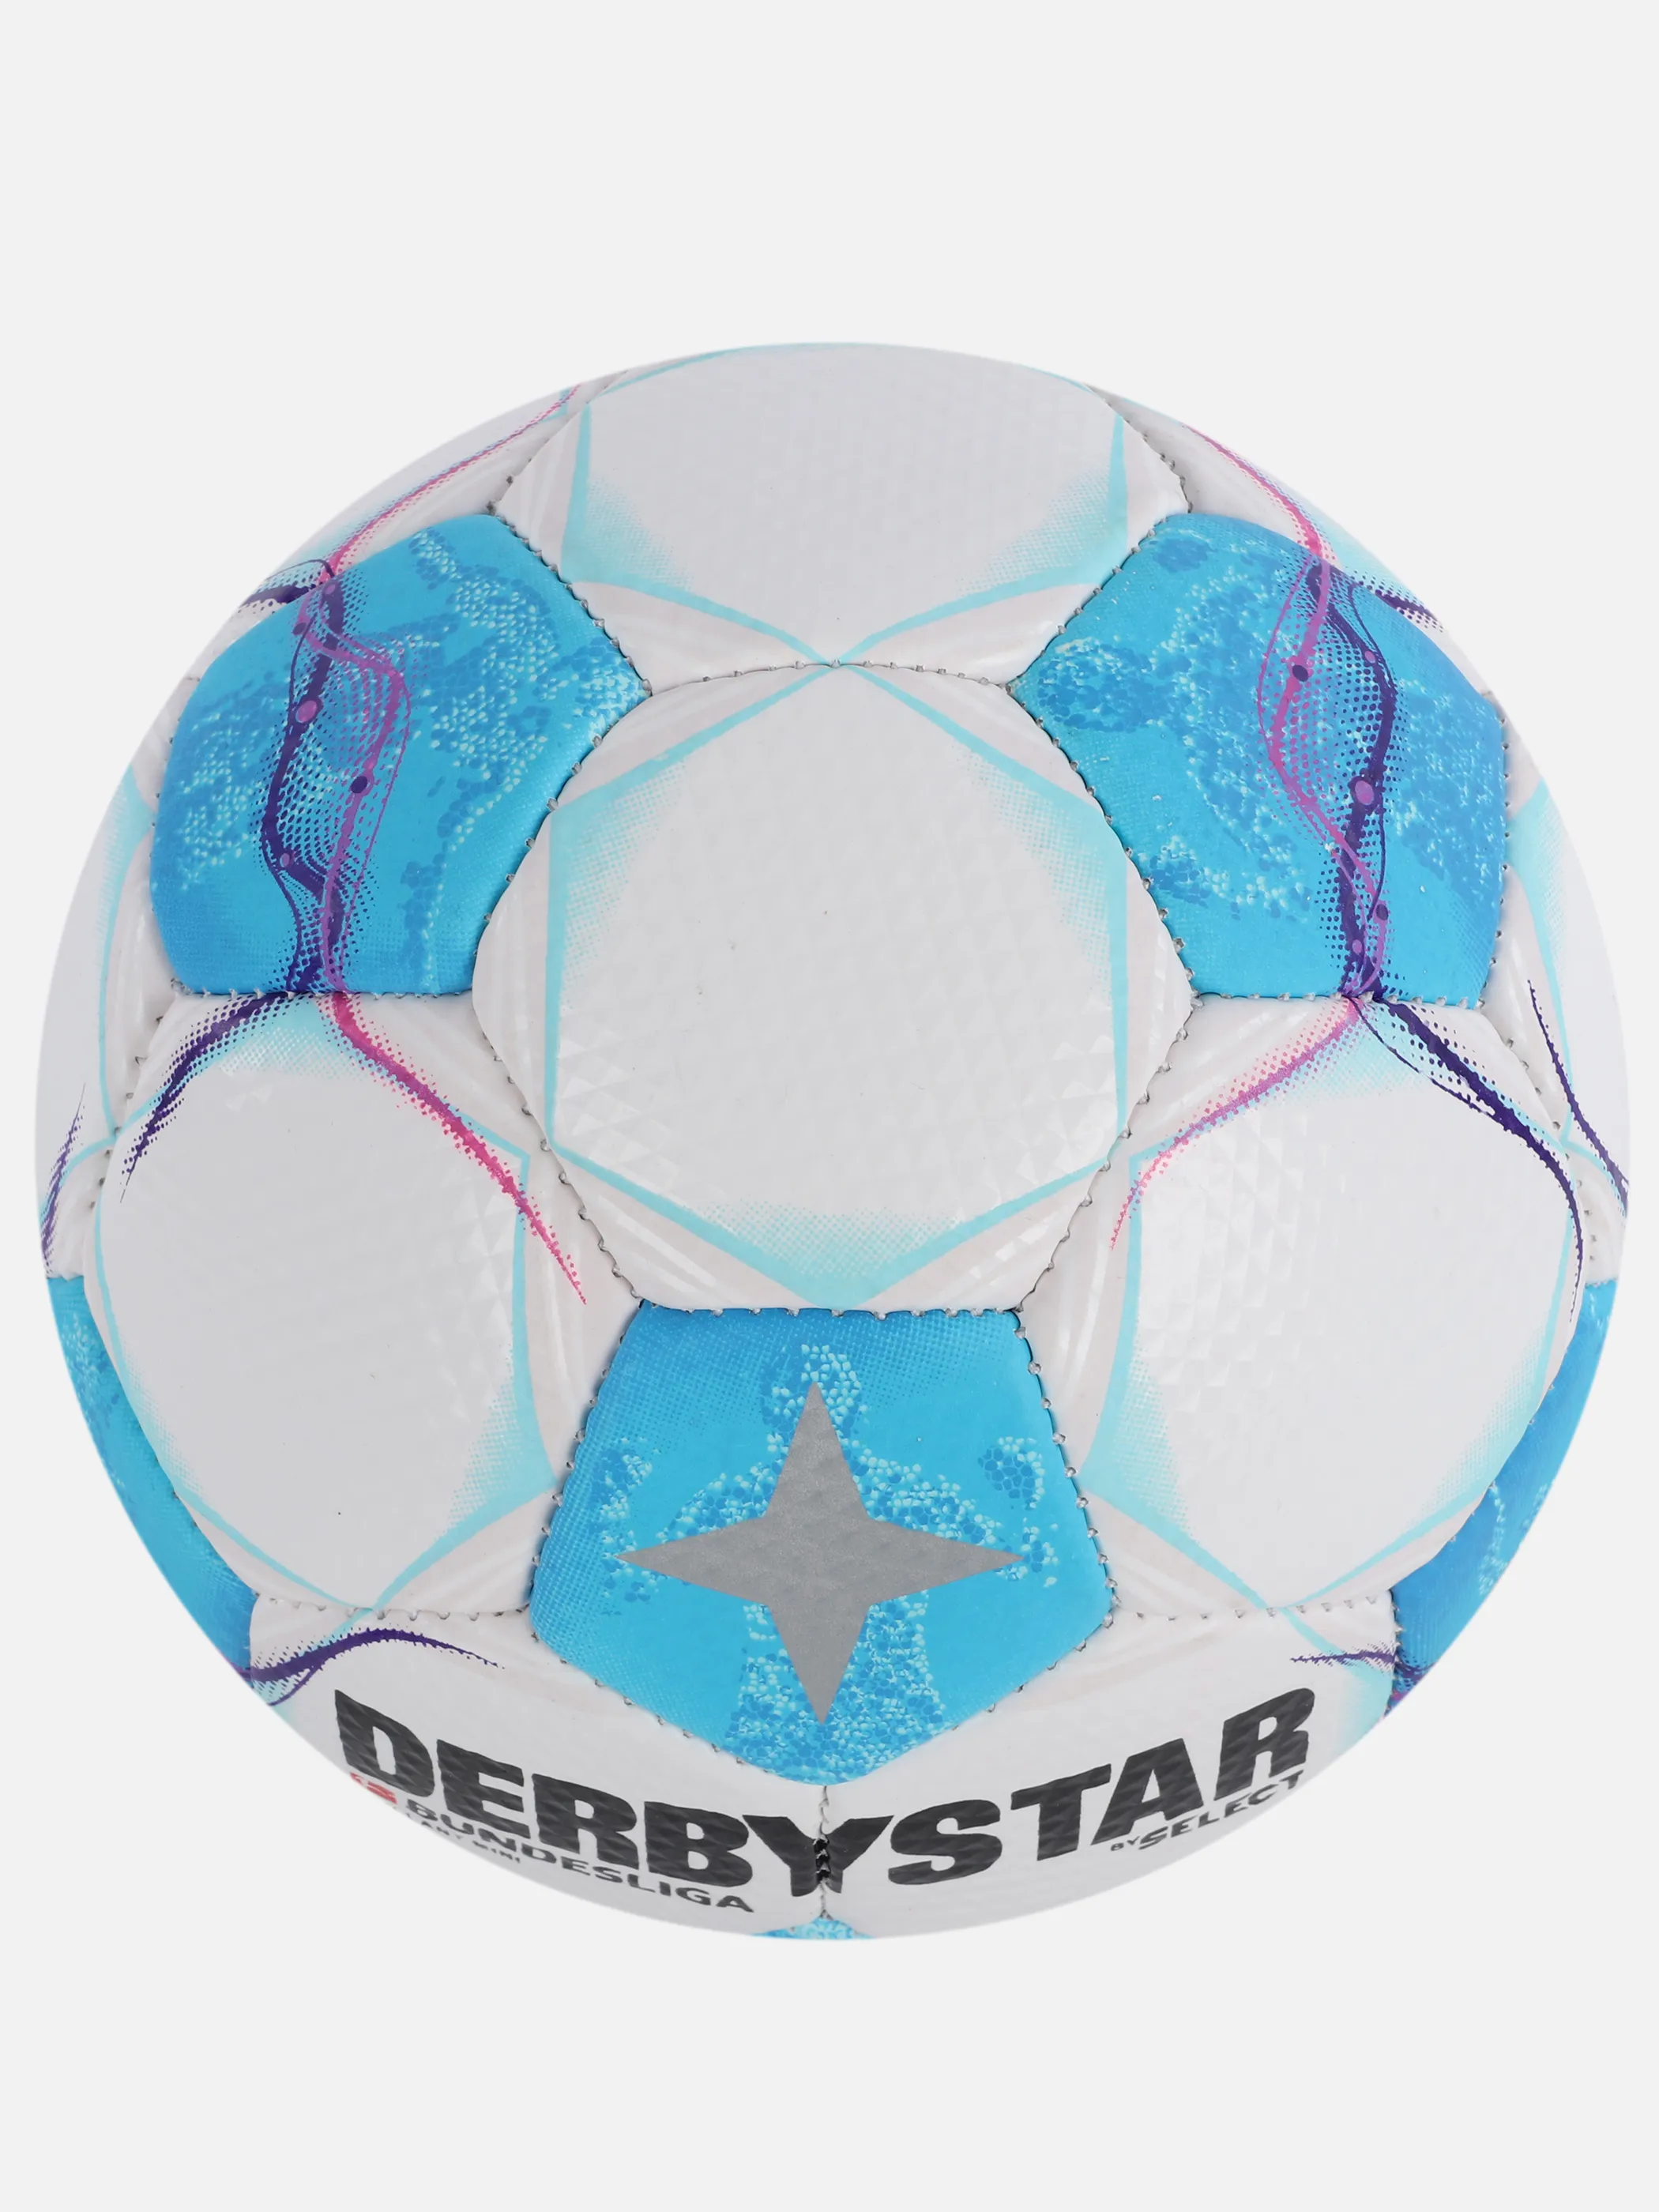 DERBYSTAR Mini Ball Bundesliga neu Bunt 904068 BUNT 2